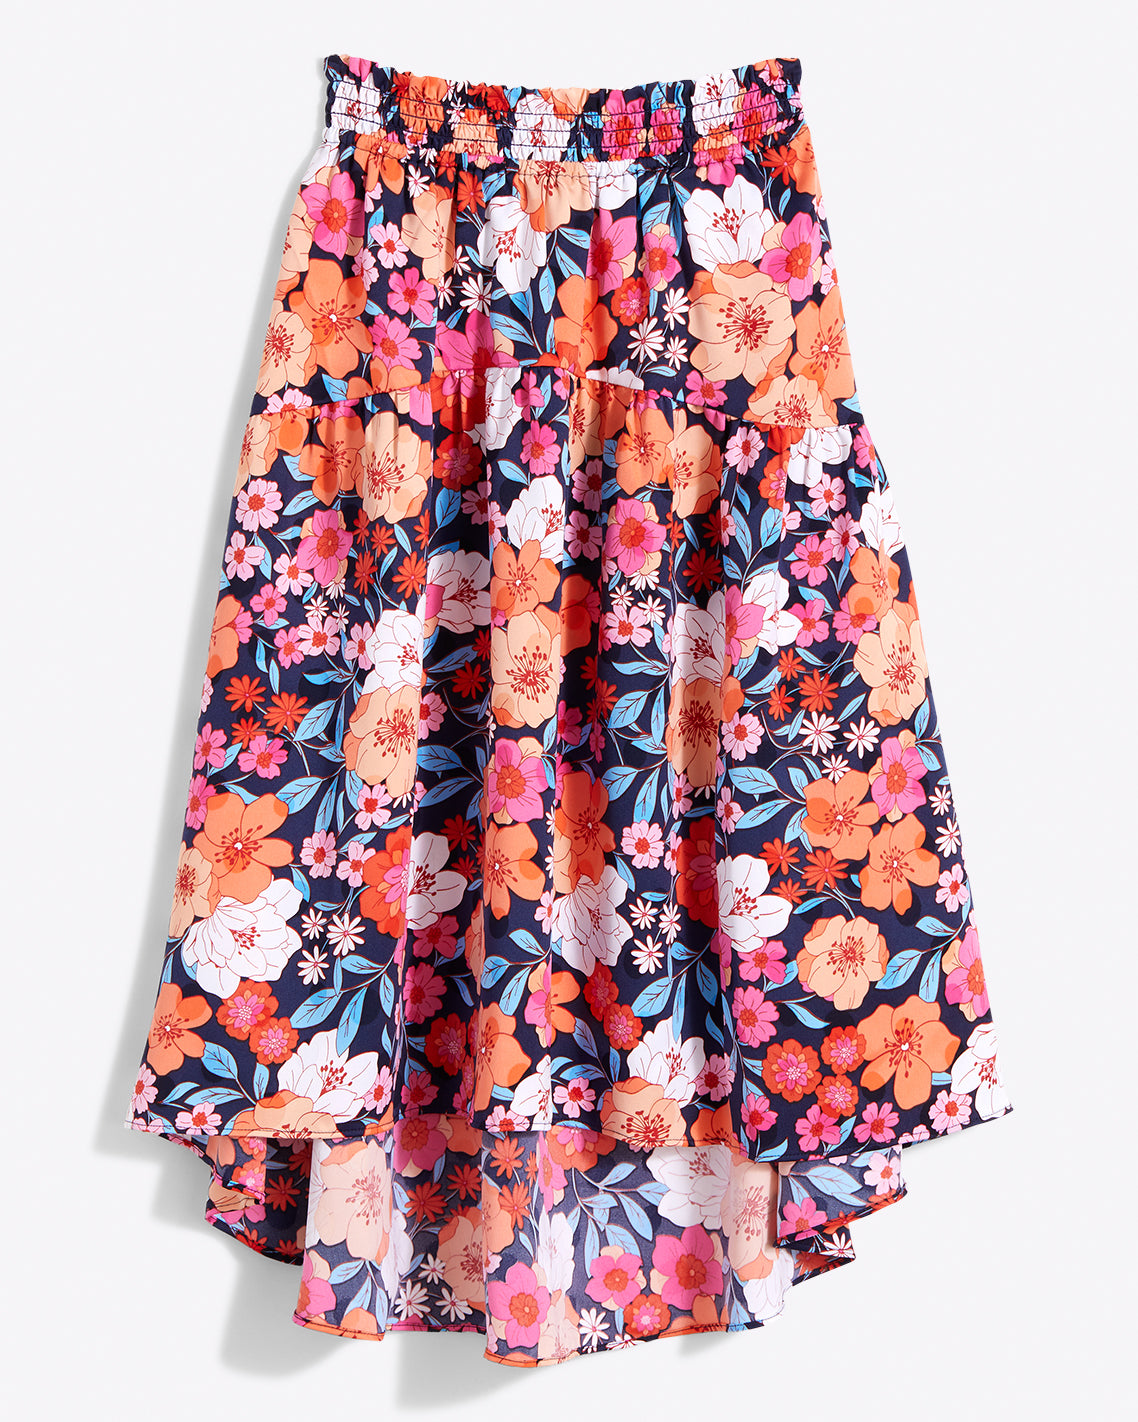 Bouquet of Dreams Light Denim Floral Skirt - E1128LDN Medium